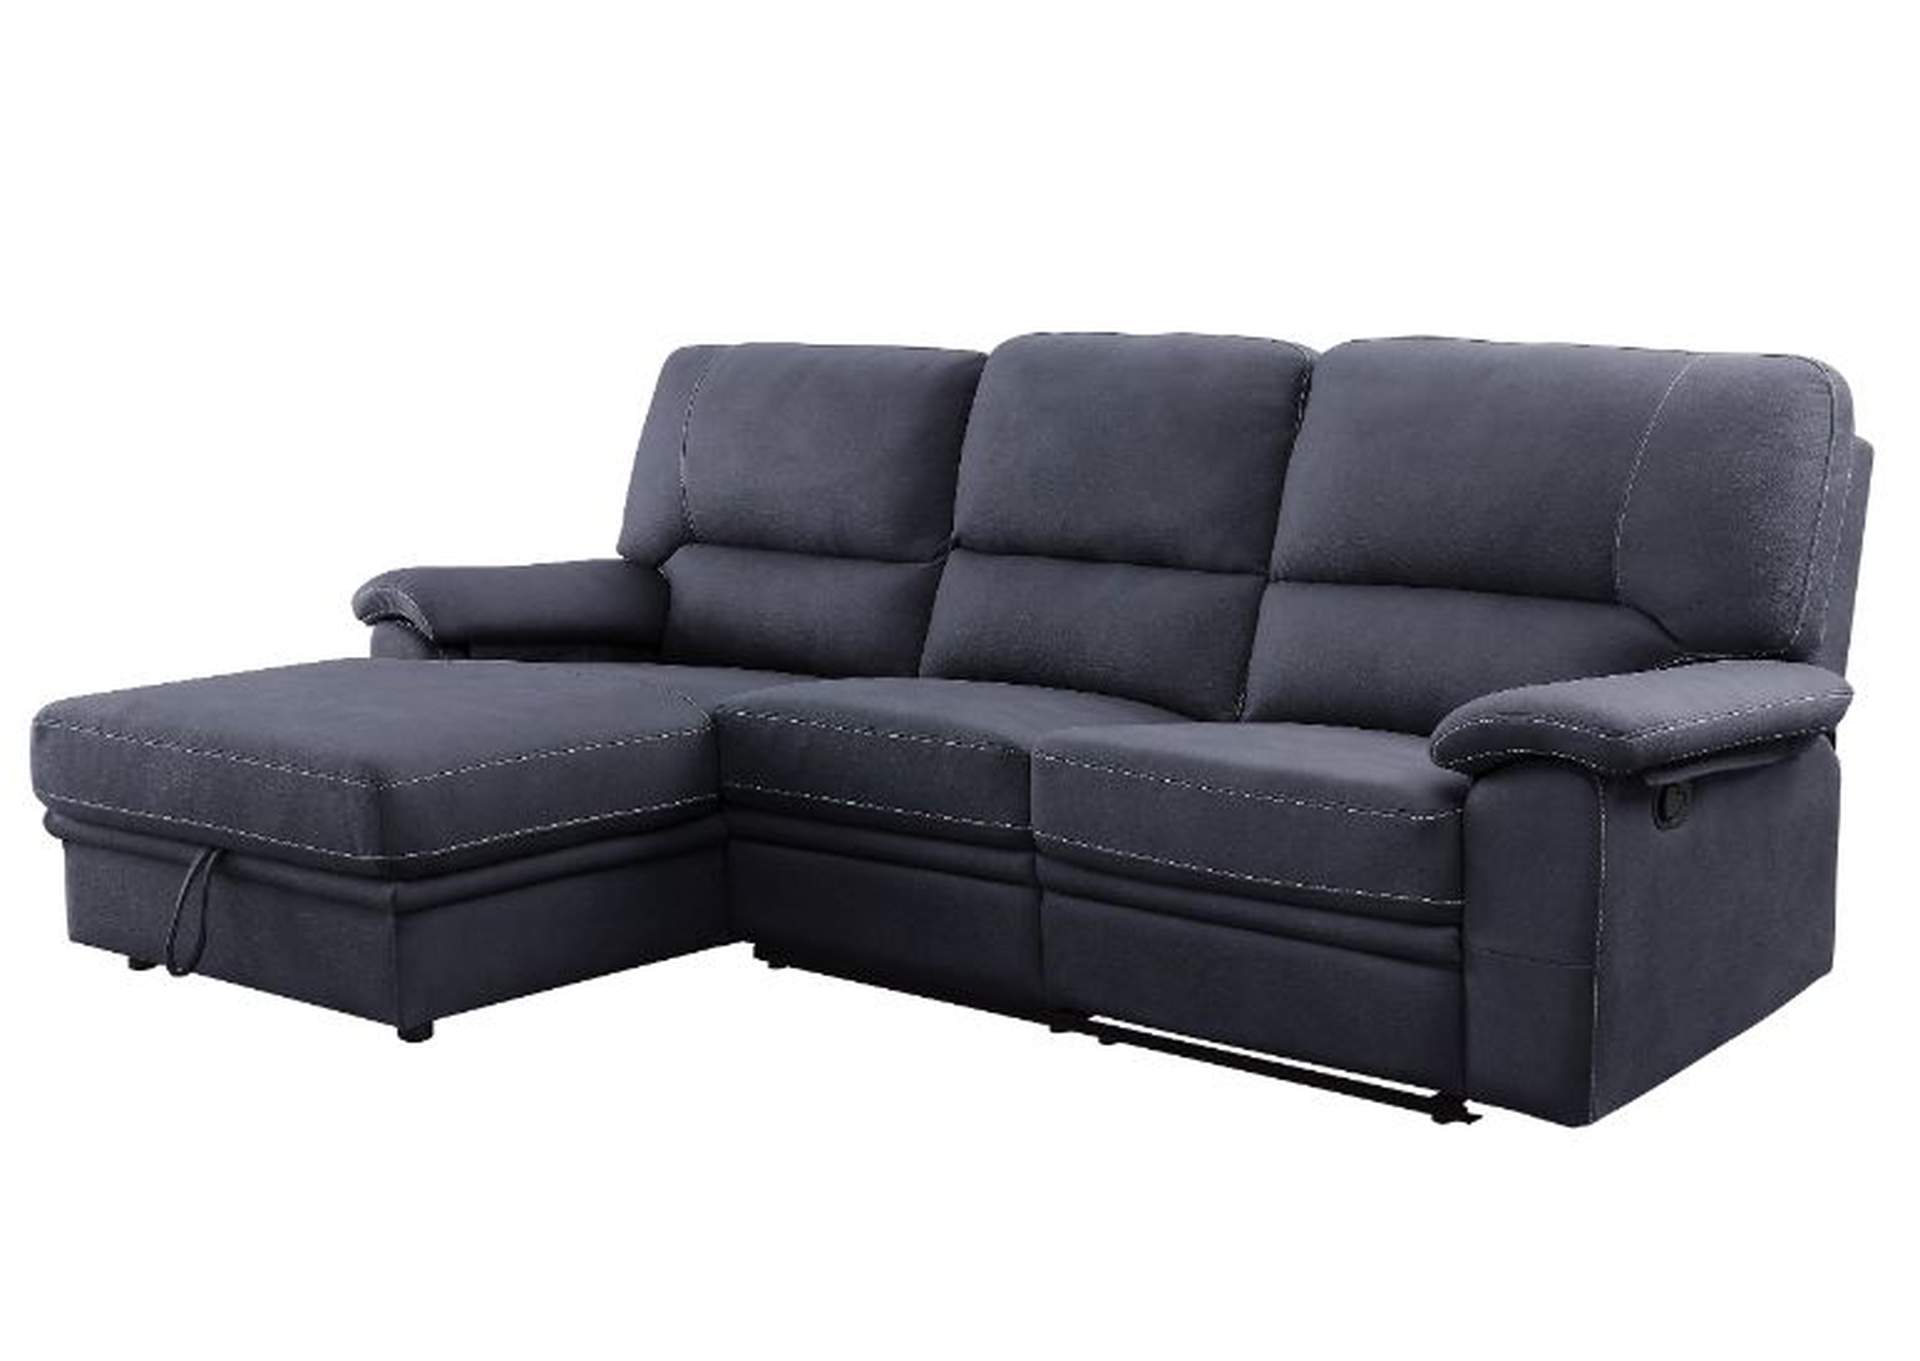 Trifora Sectional Sofa,Acme